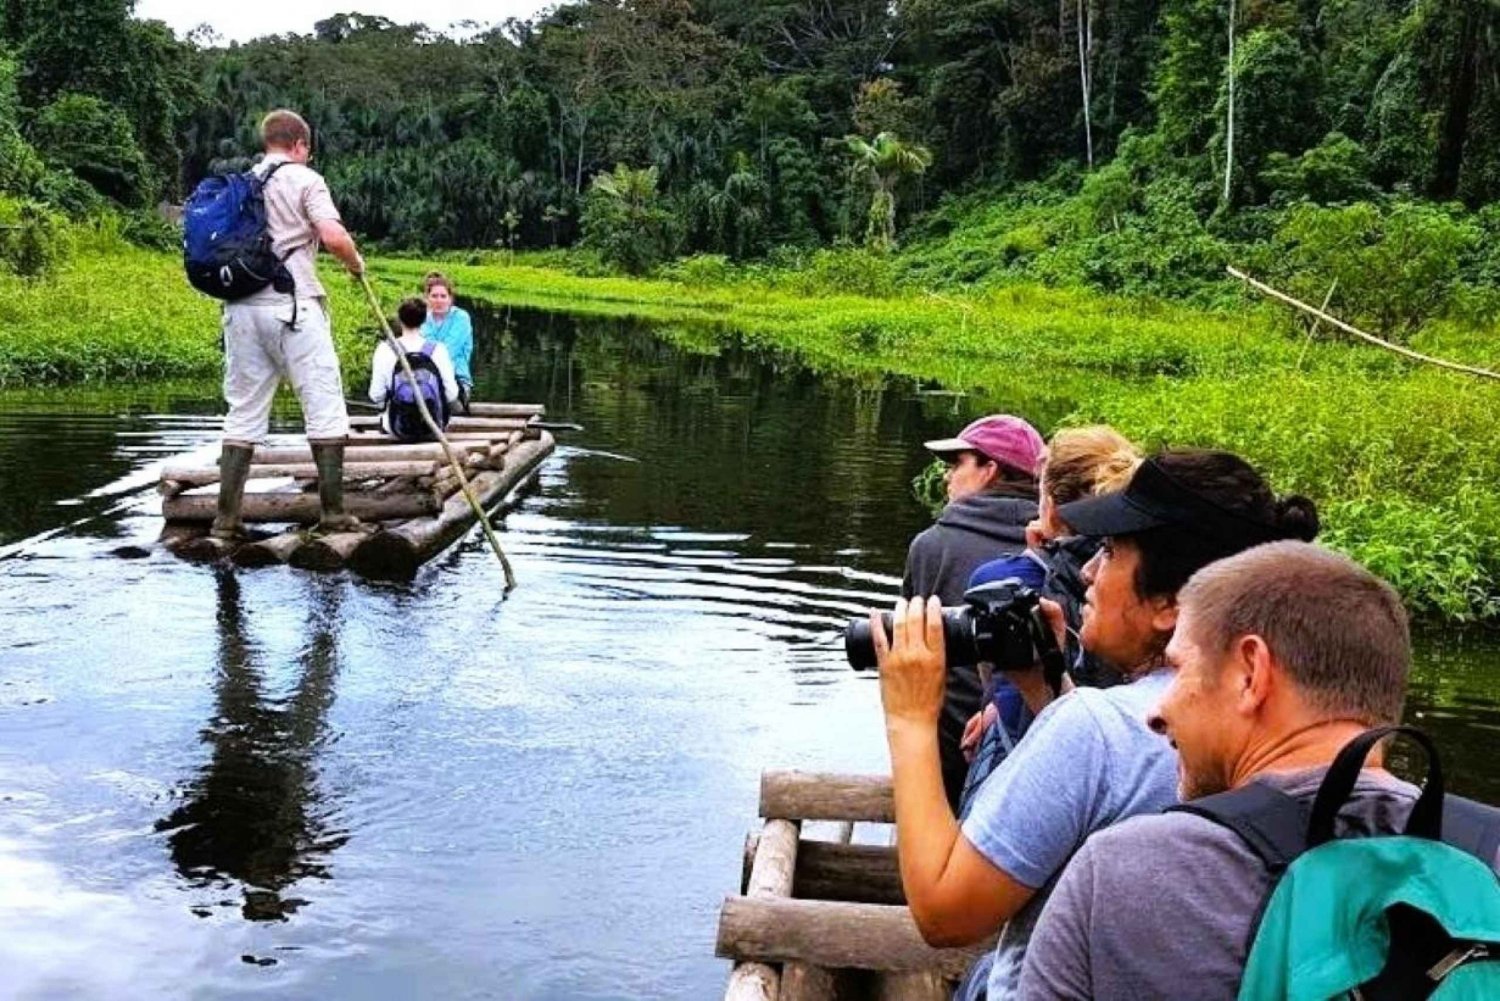 Amazonas-eventyr i 3 dage: På opdagelse i junglen fra Cusco